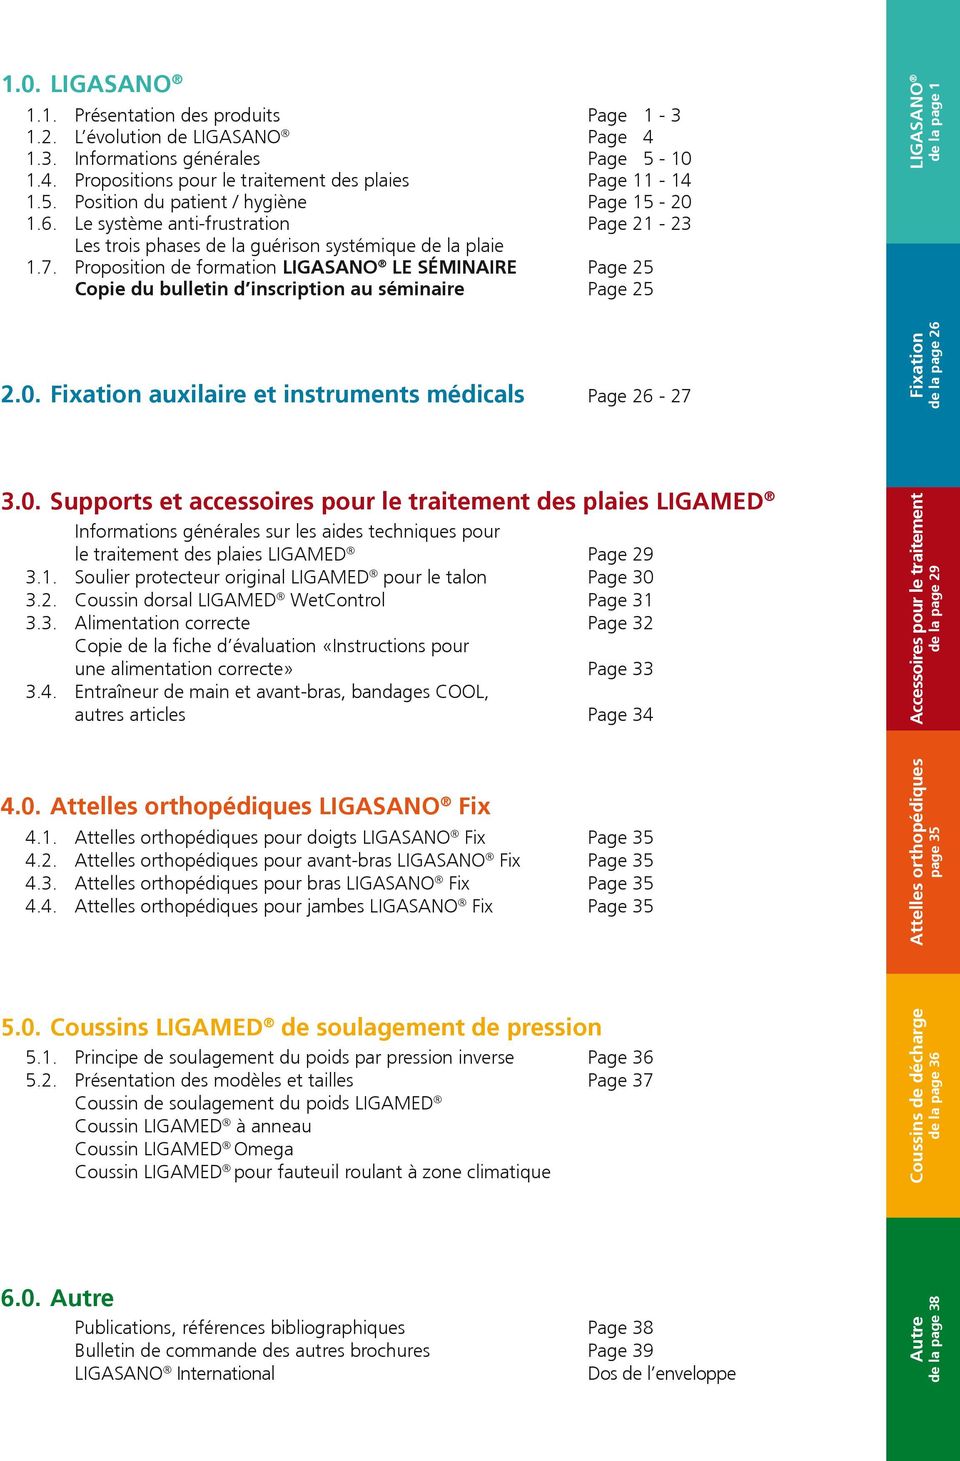 Proposition de formation LE SÉMINAIRE Page 25 Copie du bulletin d inscription au séminaire Page 25 2.0.